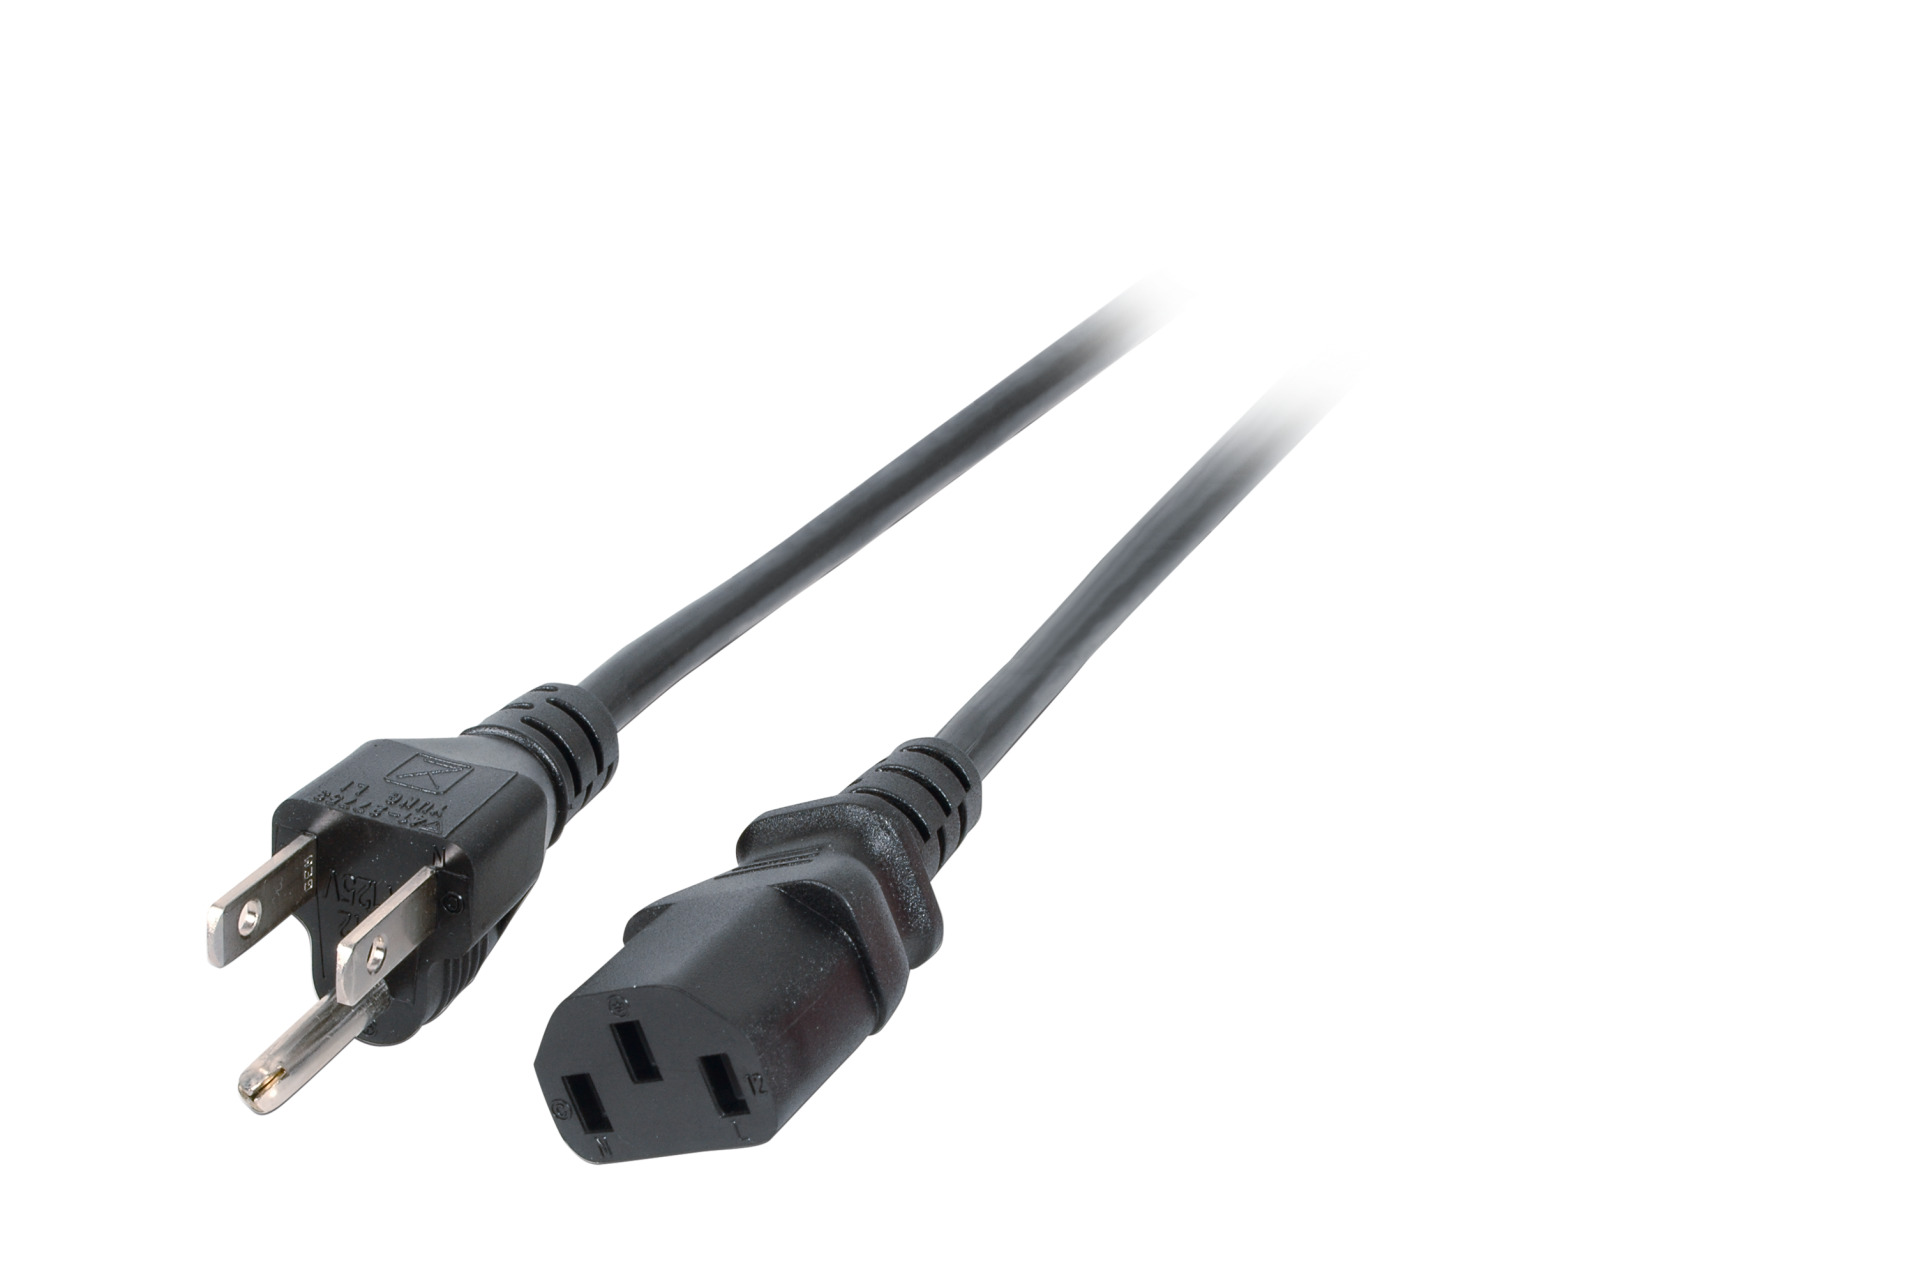 Power Cable USA/NEMA 5-15P - C13 180°, Black, 1.8 m, 3SJT AWG14 x 3C